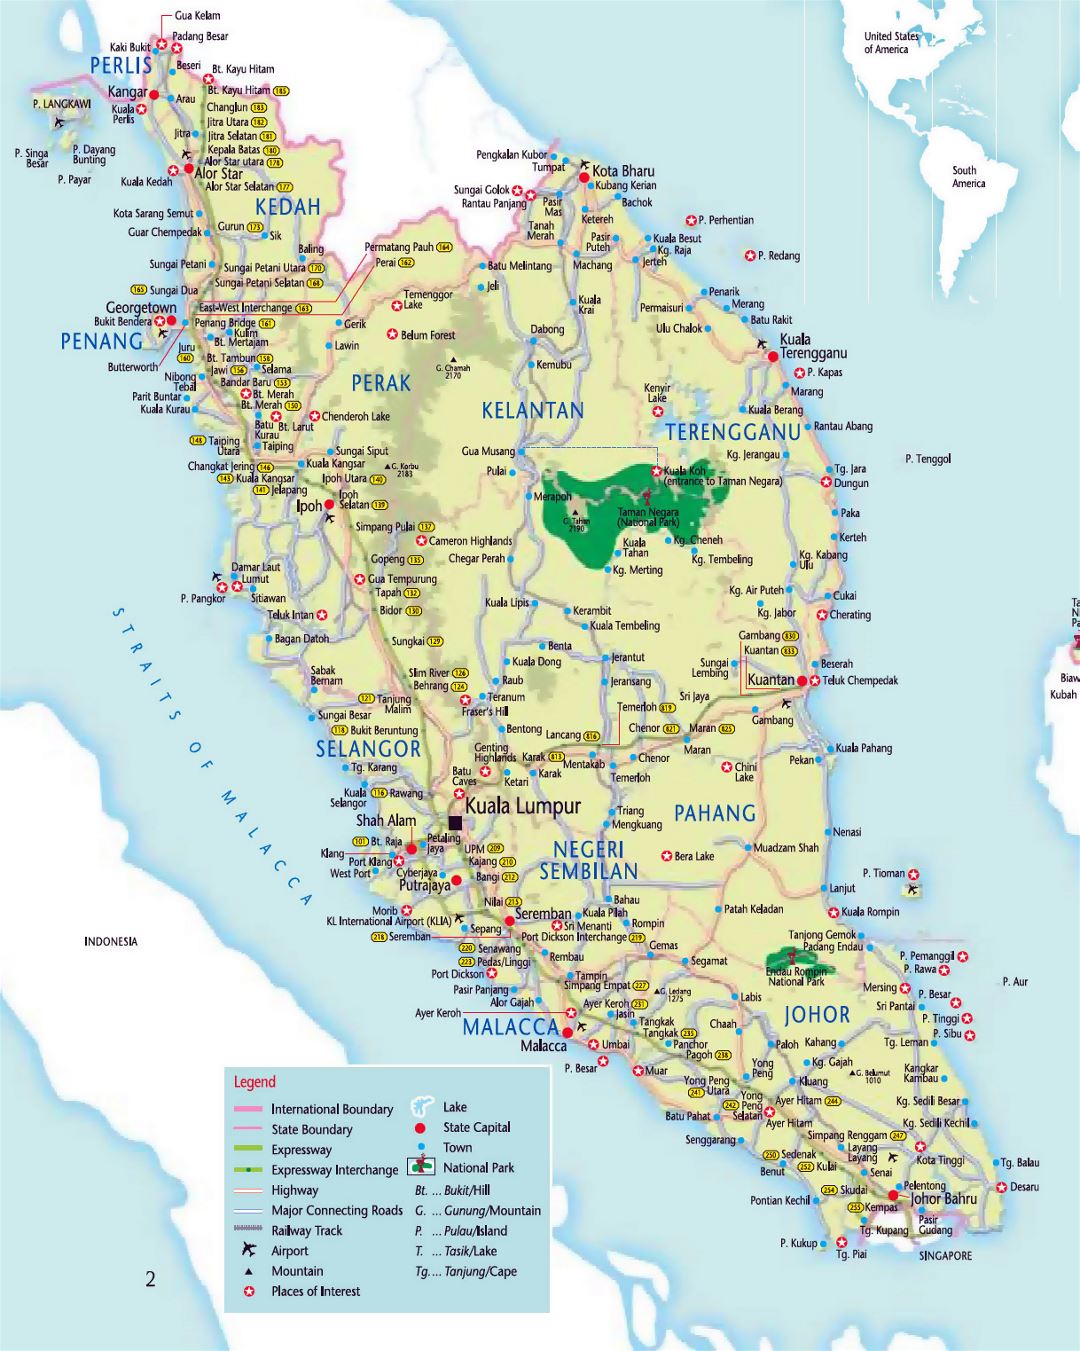 Detallado mapa turístico del oeste de Malasia con carreteras, ciudades y aeropuertos